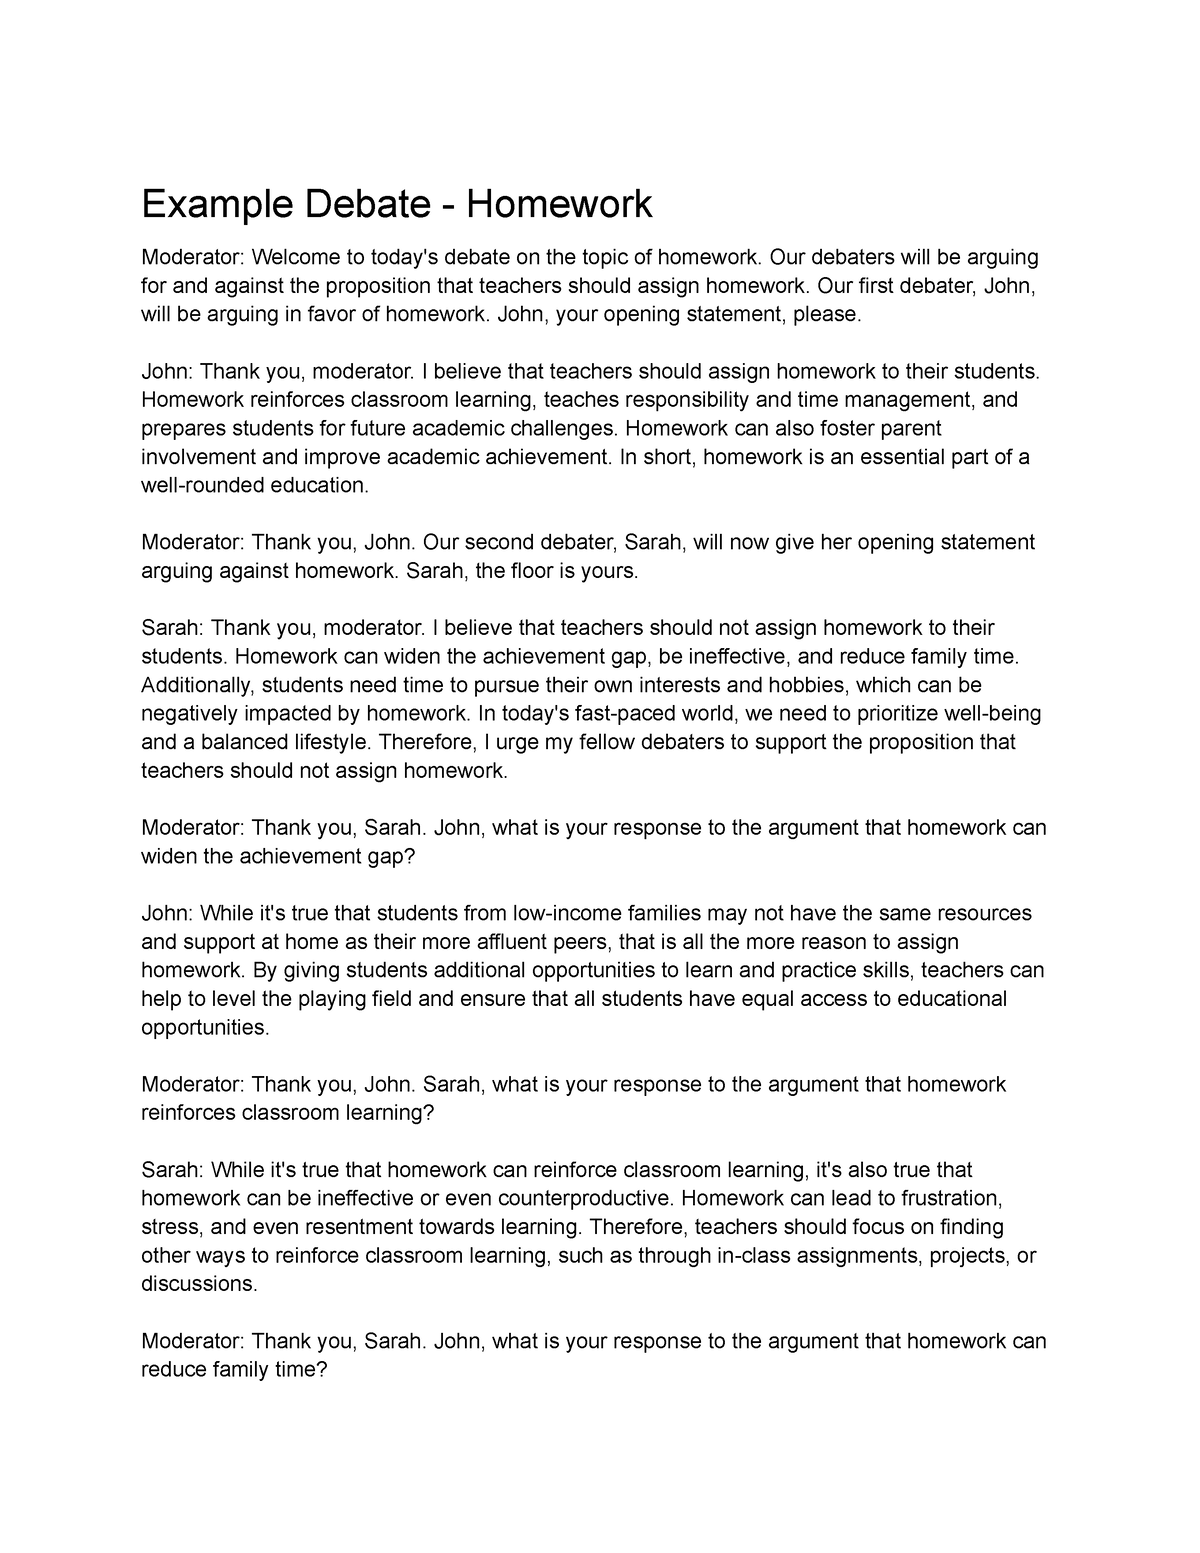 homework debate history